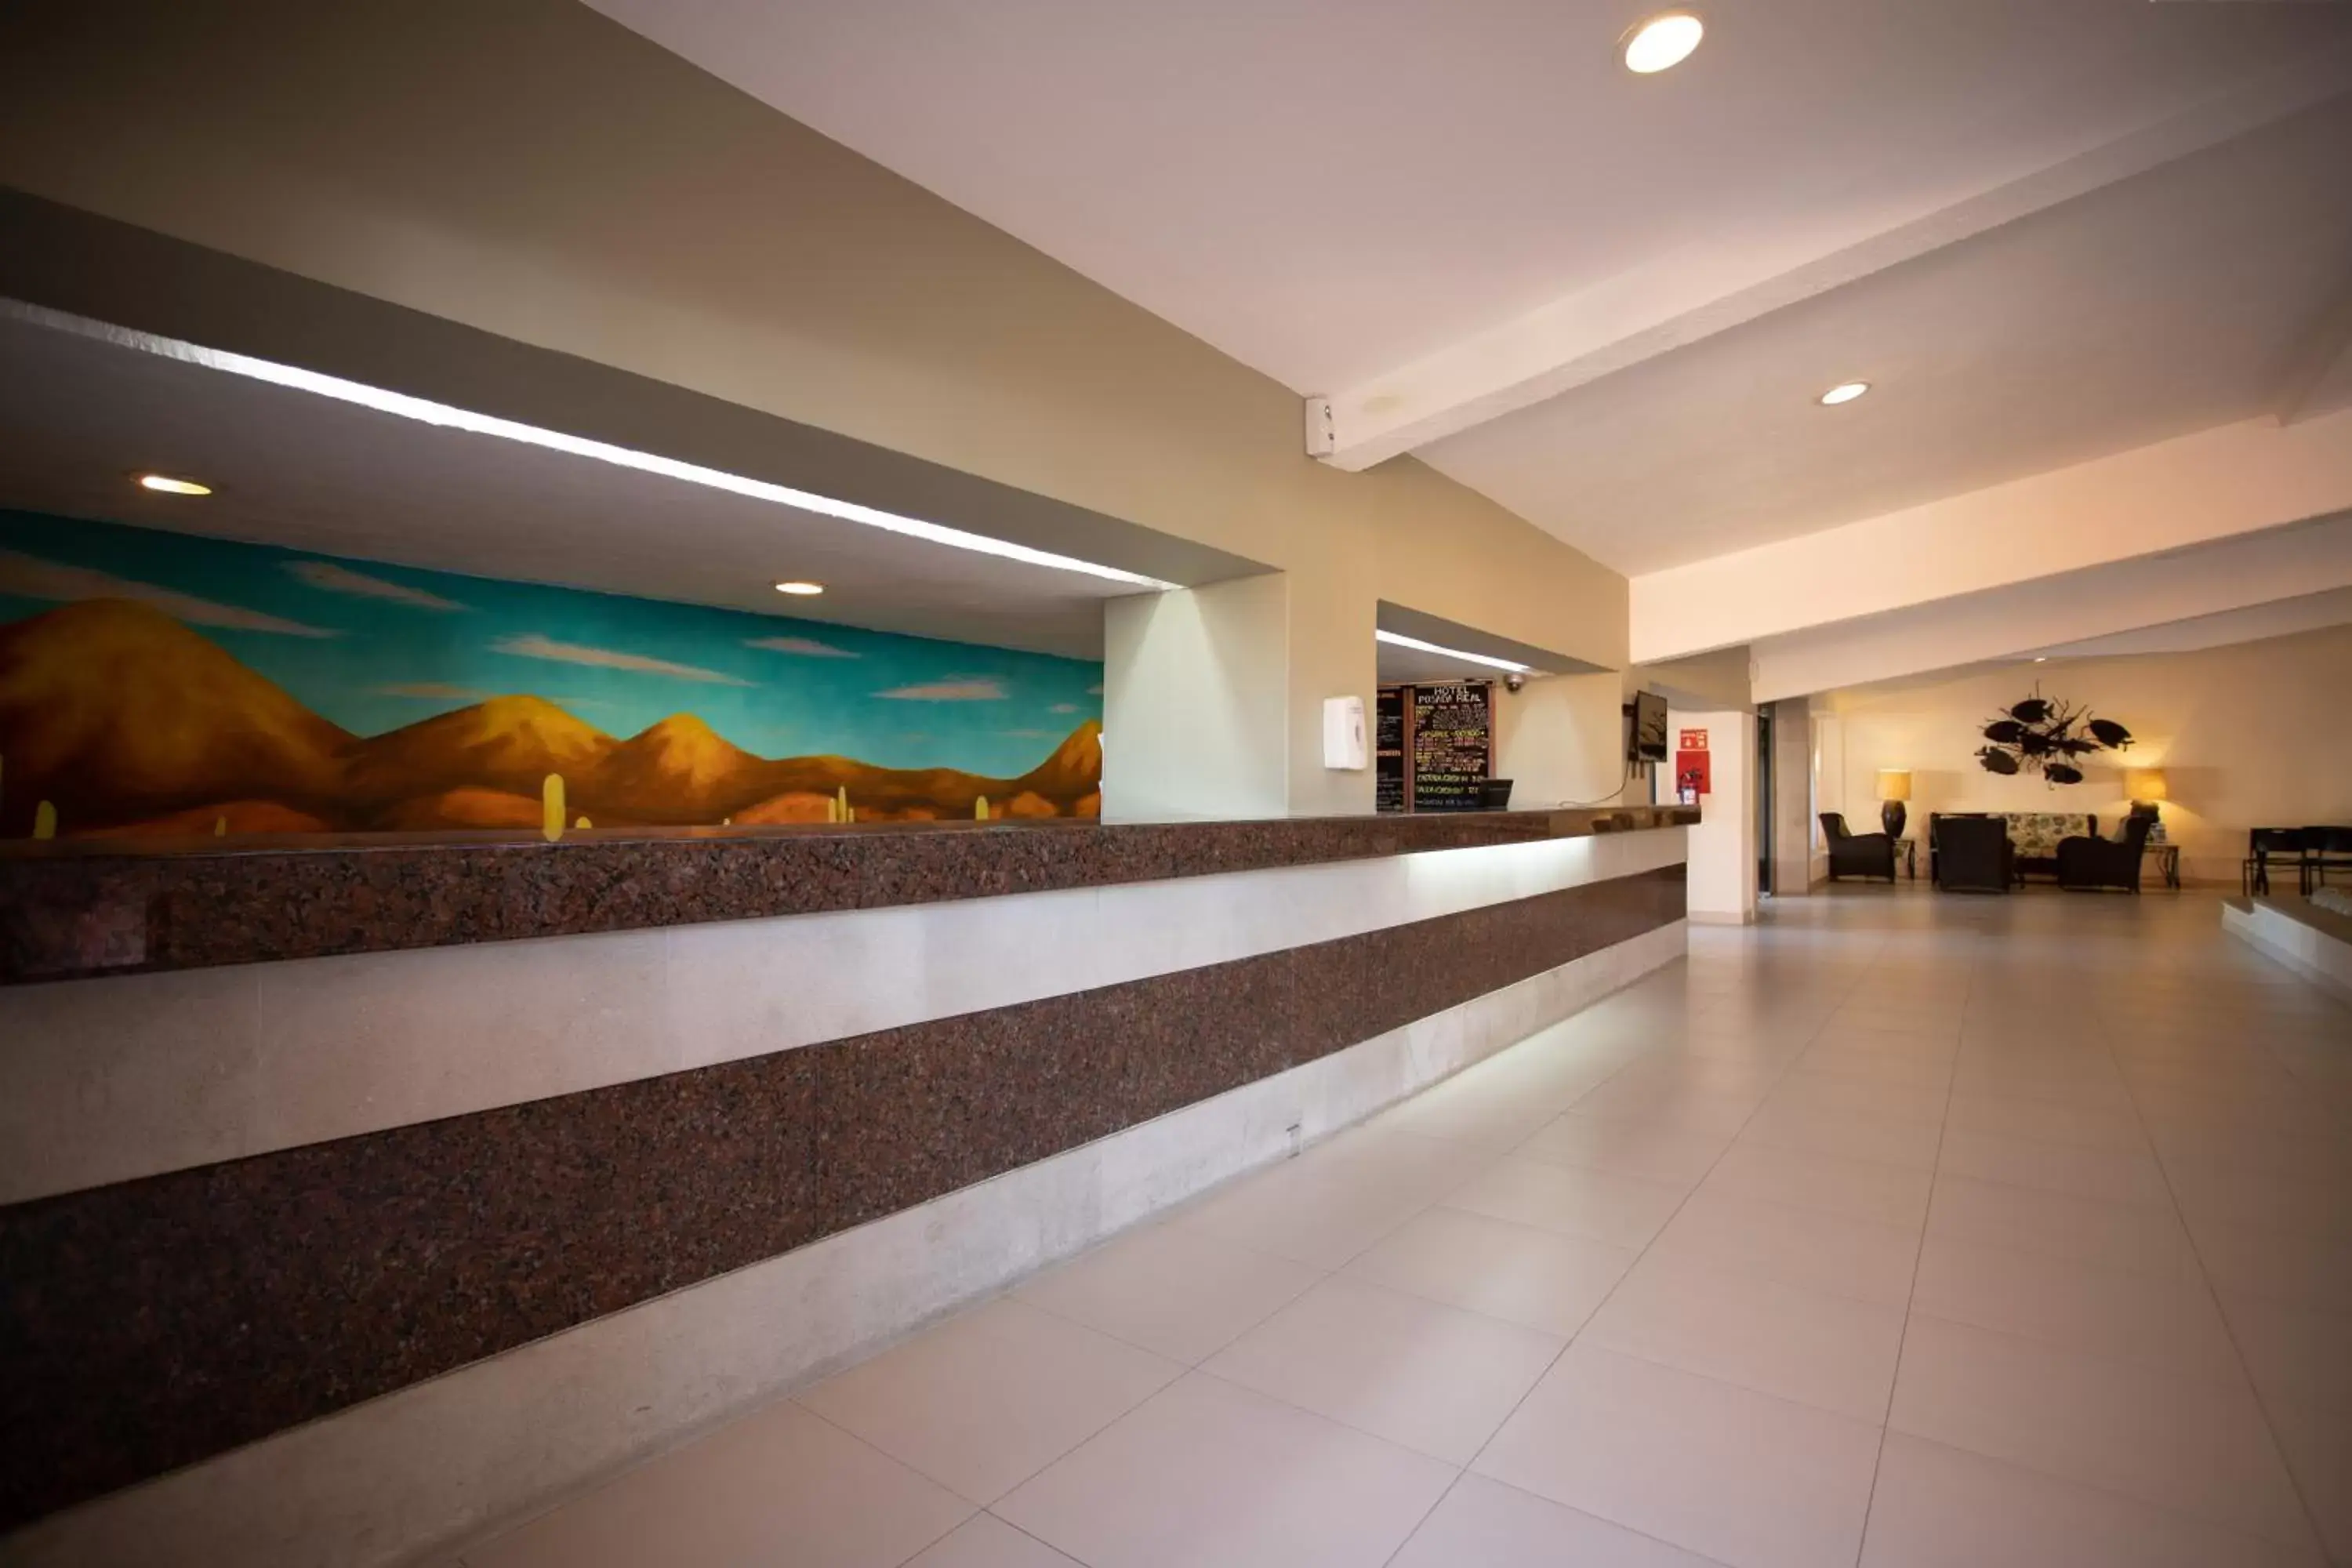 Lobby or reception, Lobby/Reception in Posada Real Los Cabos